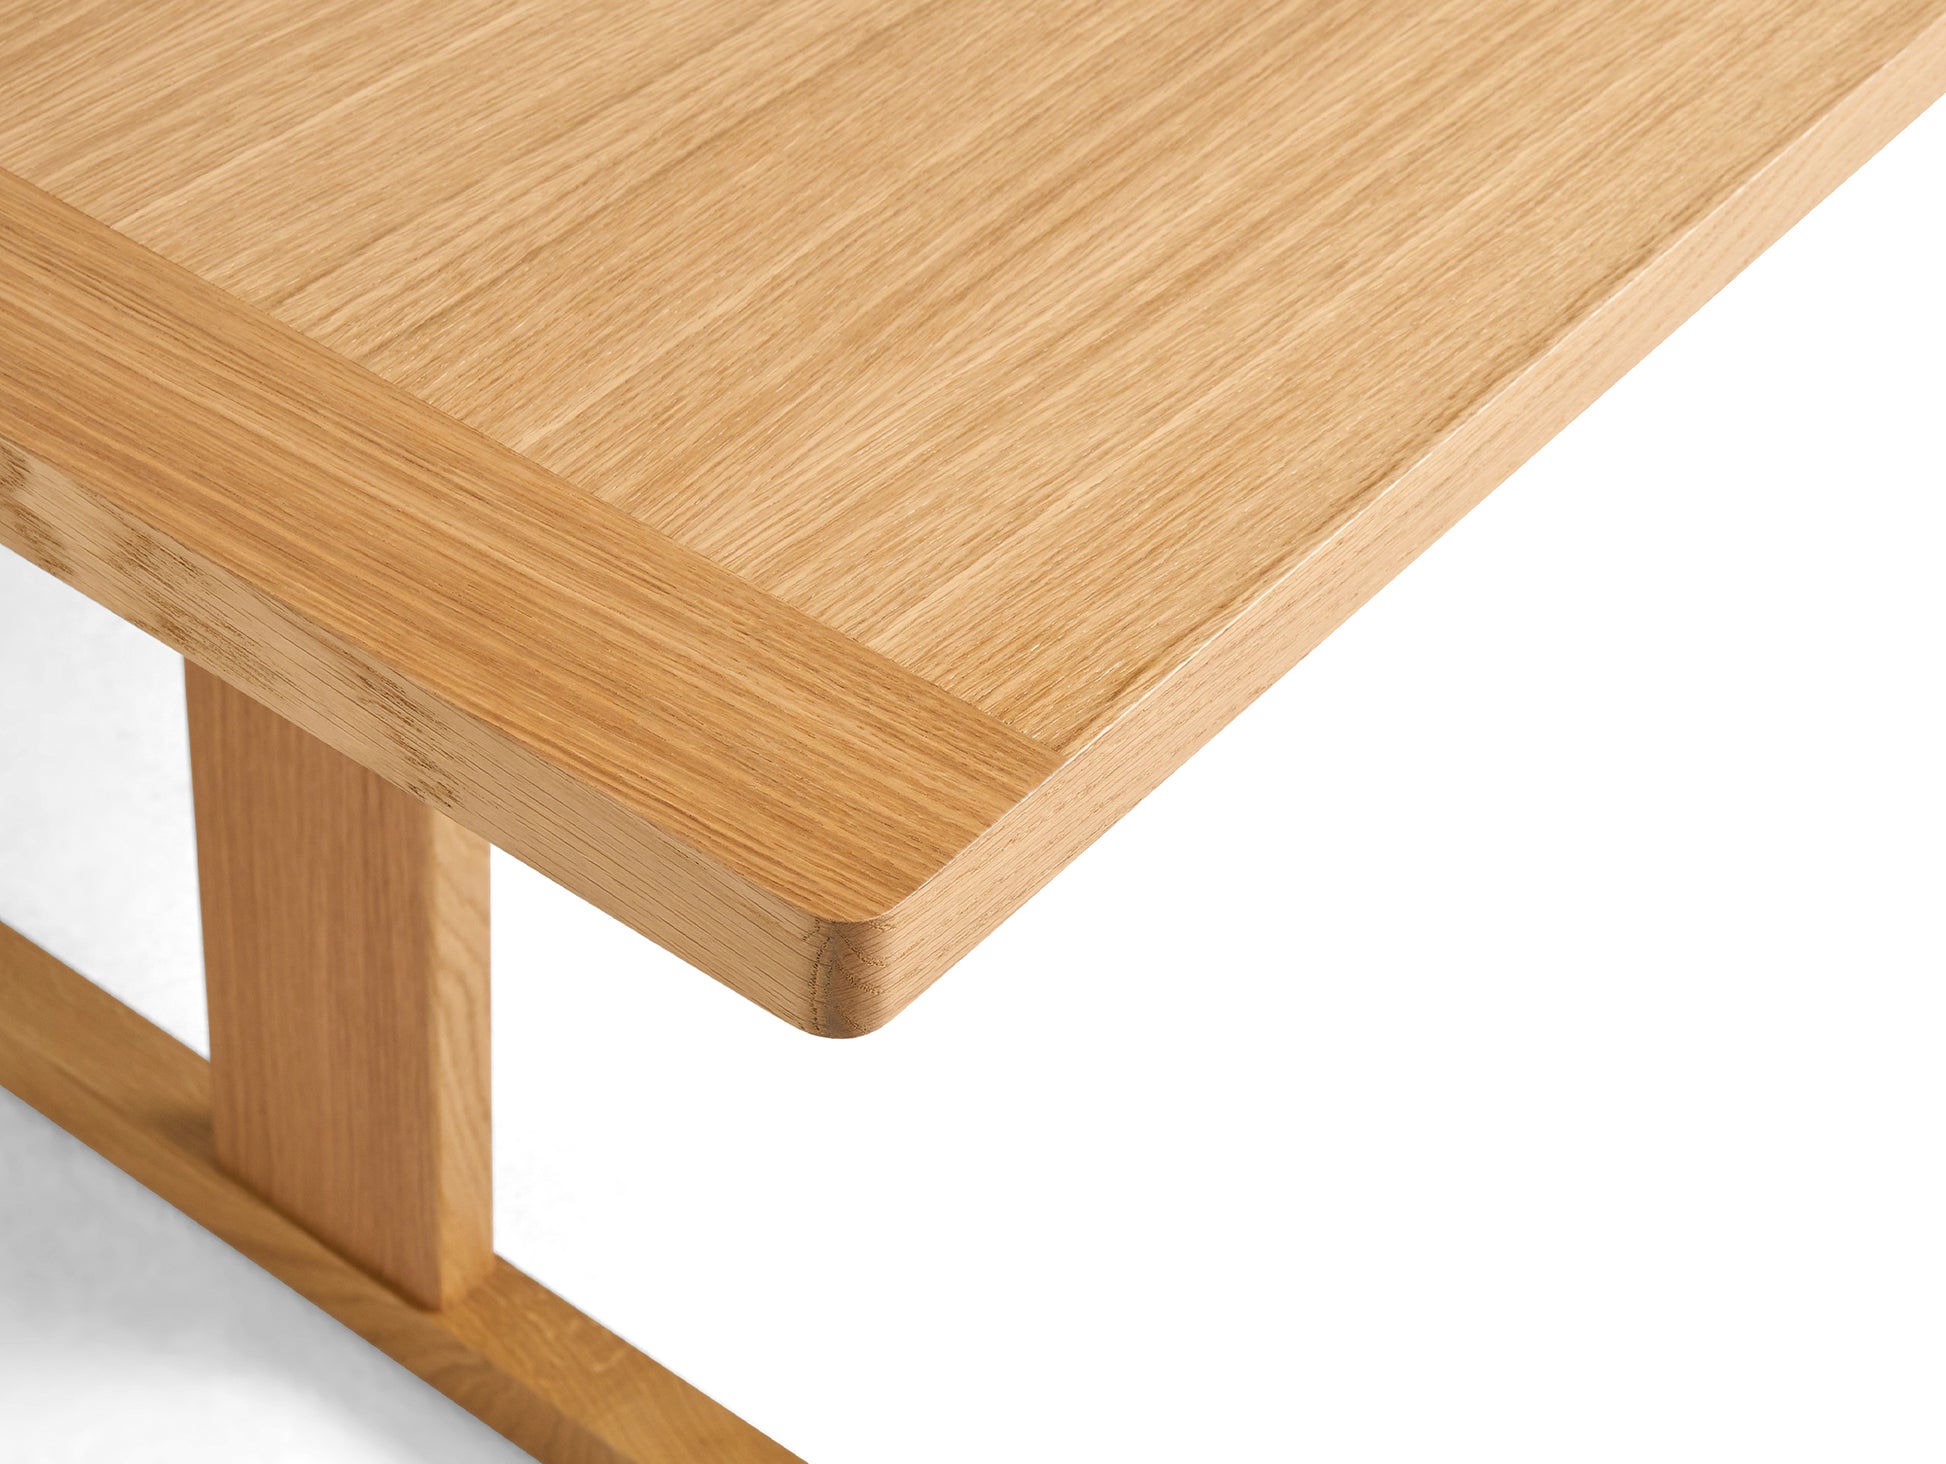 Passerelle Table (Veneer Tabletop) by HAY - Oak Tabletop 